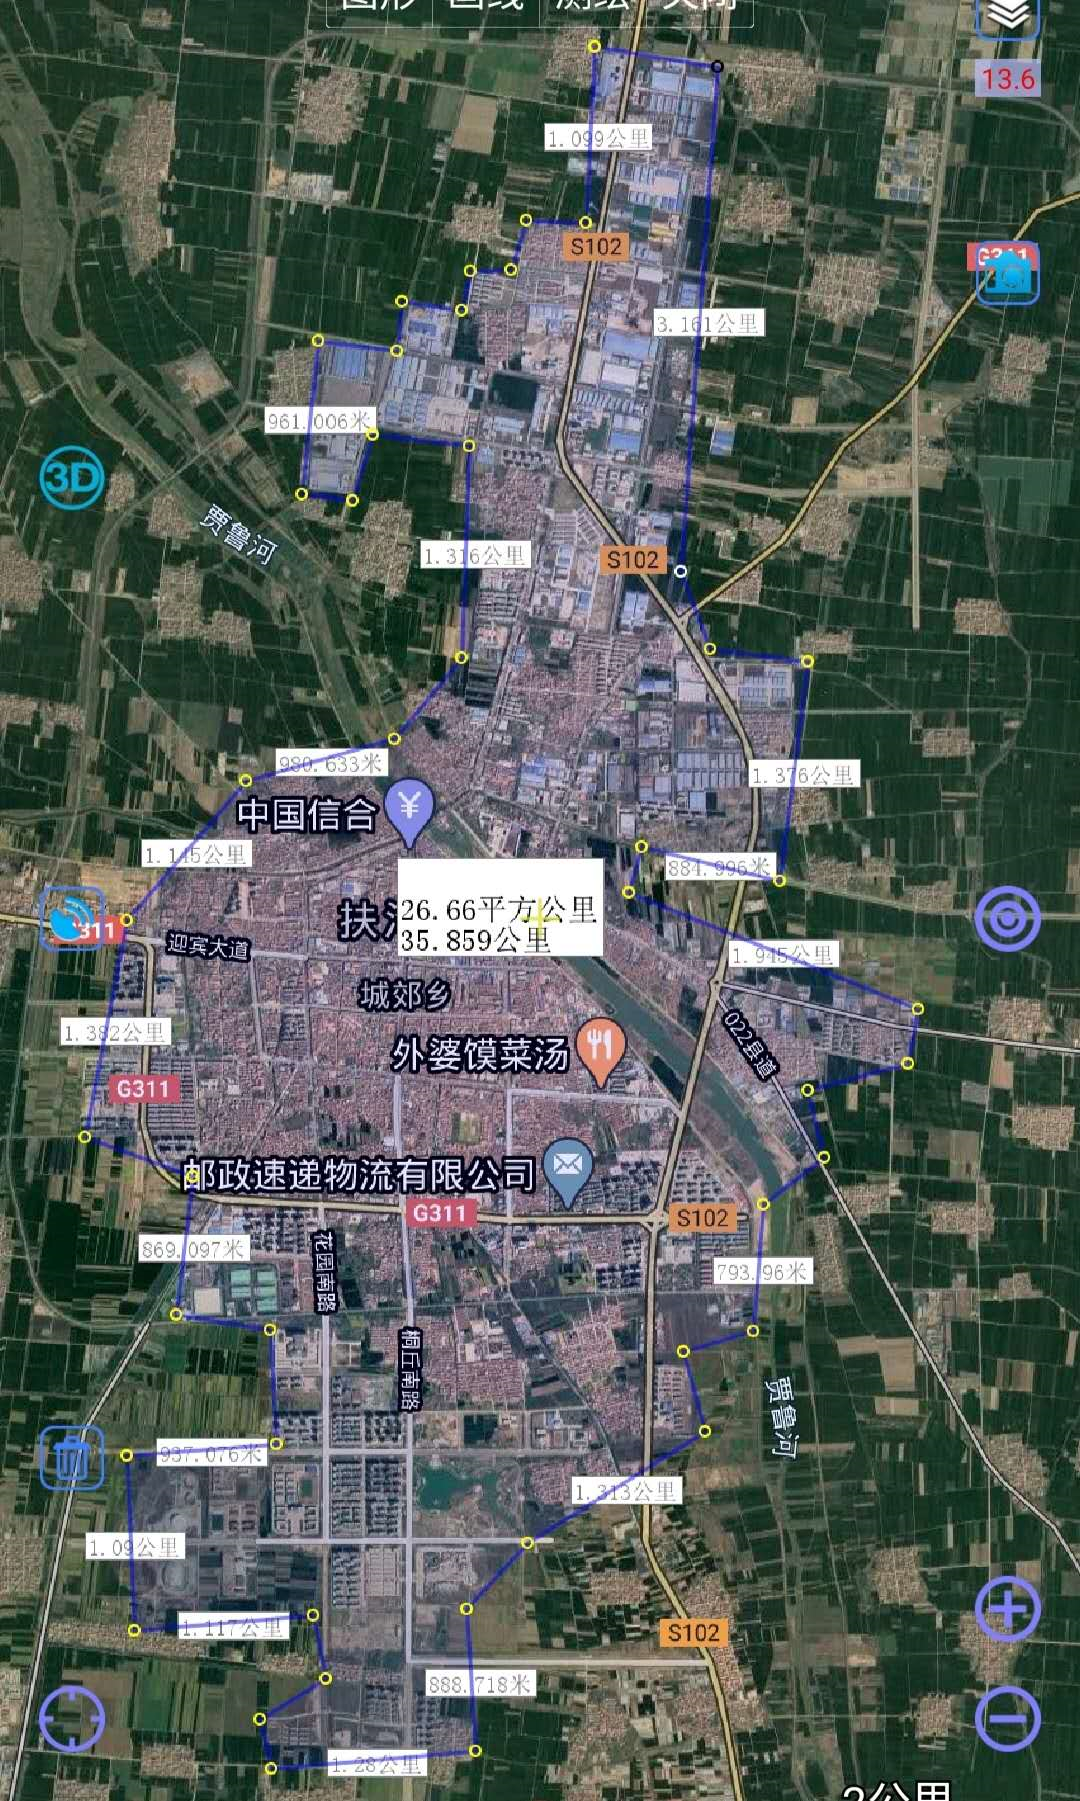 西华县道路规划图片